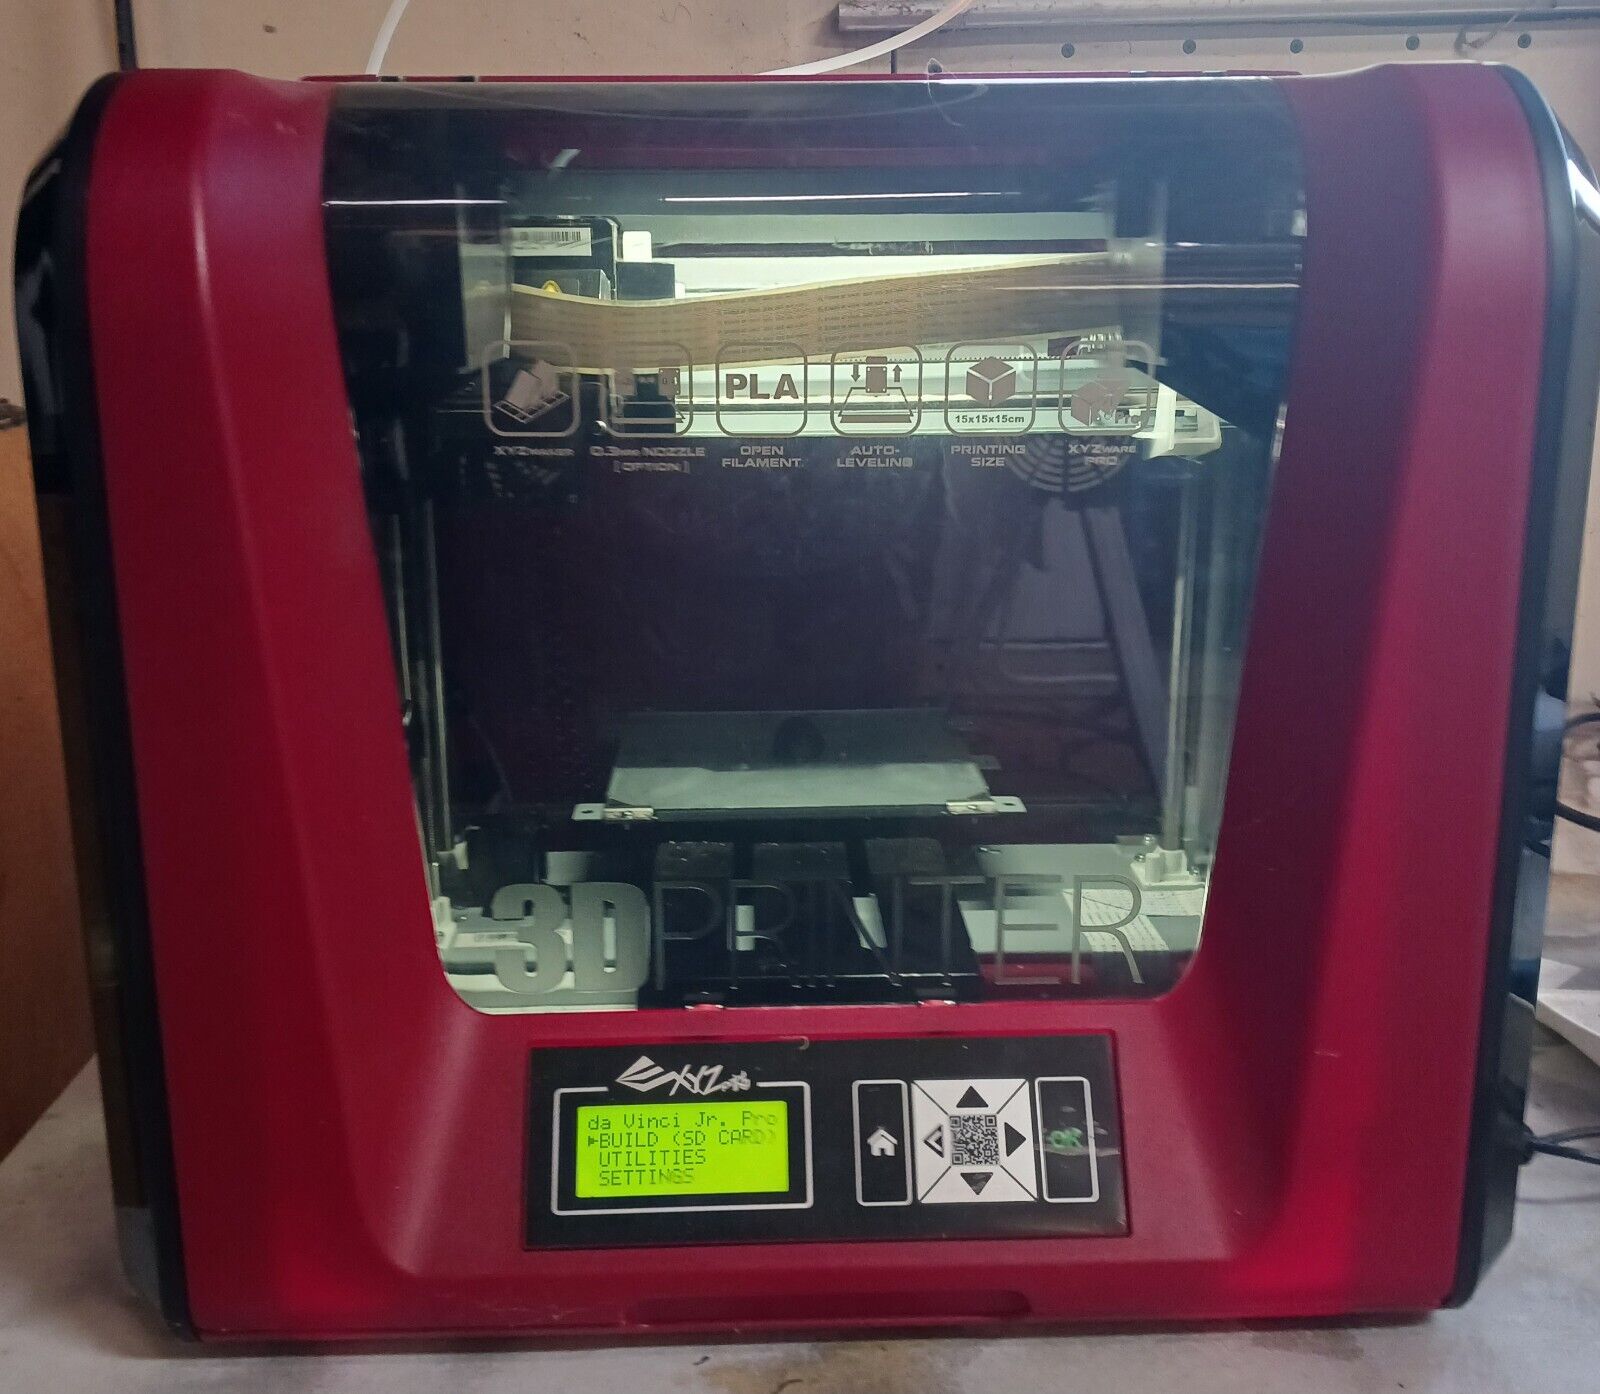 XYZ DaVinci Jr. 1.0 Pro 3D Printer-parts-only price, but probably still works